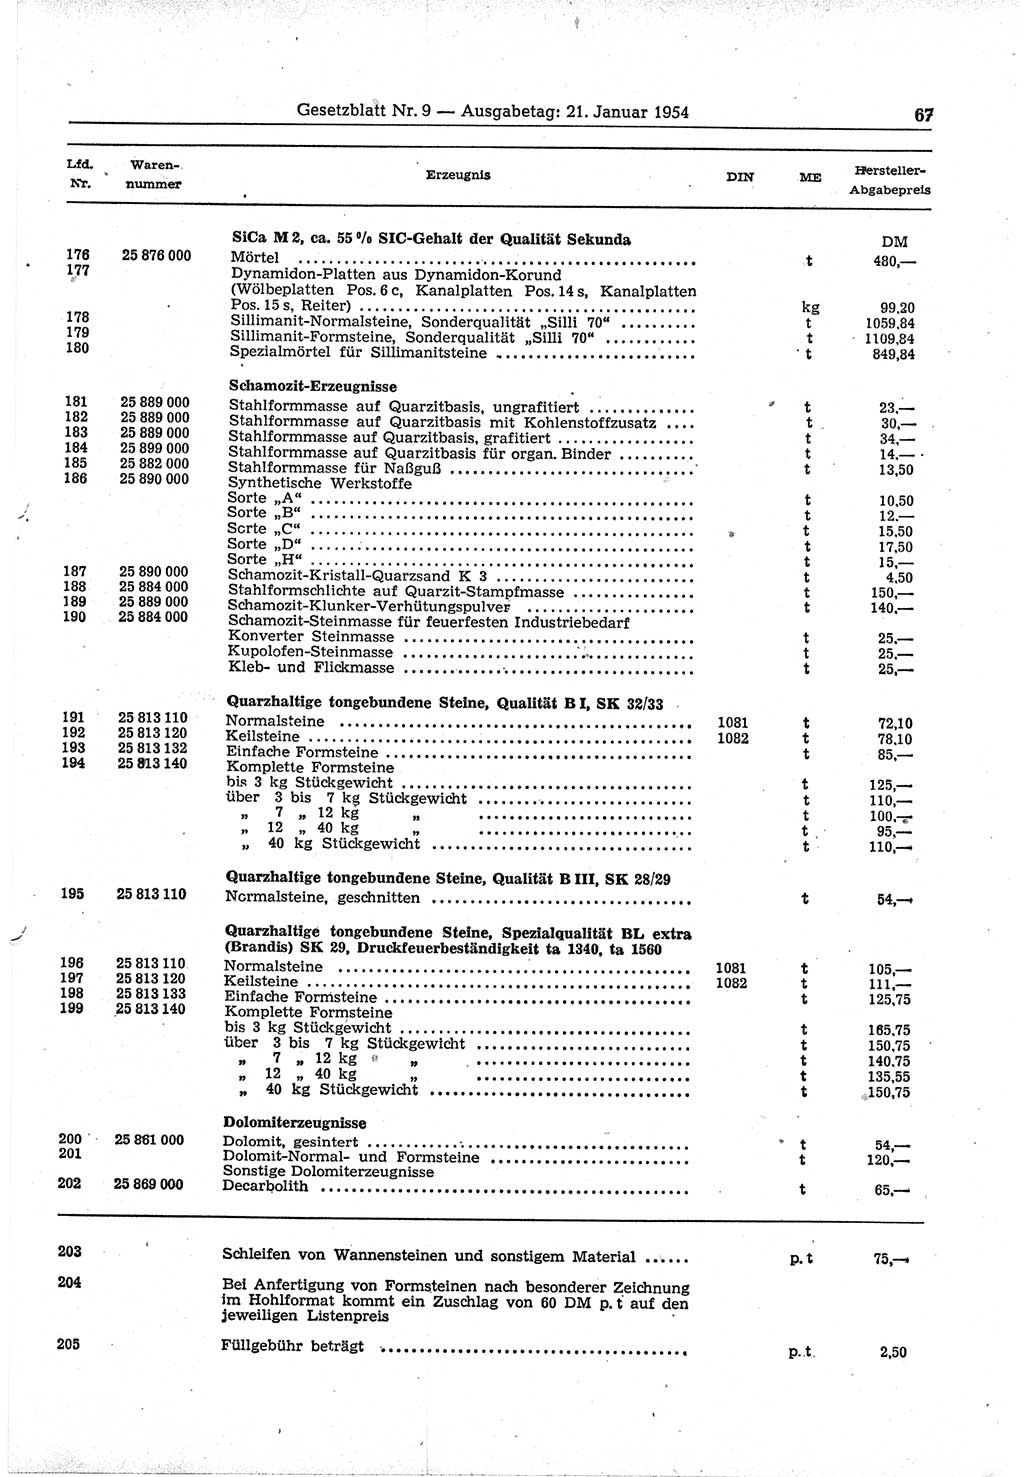 Gesetzblatt (GBl.) der Deutschen Demokratischen Republik (DDR) 1954, Seite 67 (GBl. DDR 1954, S. 67)